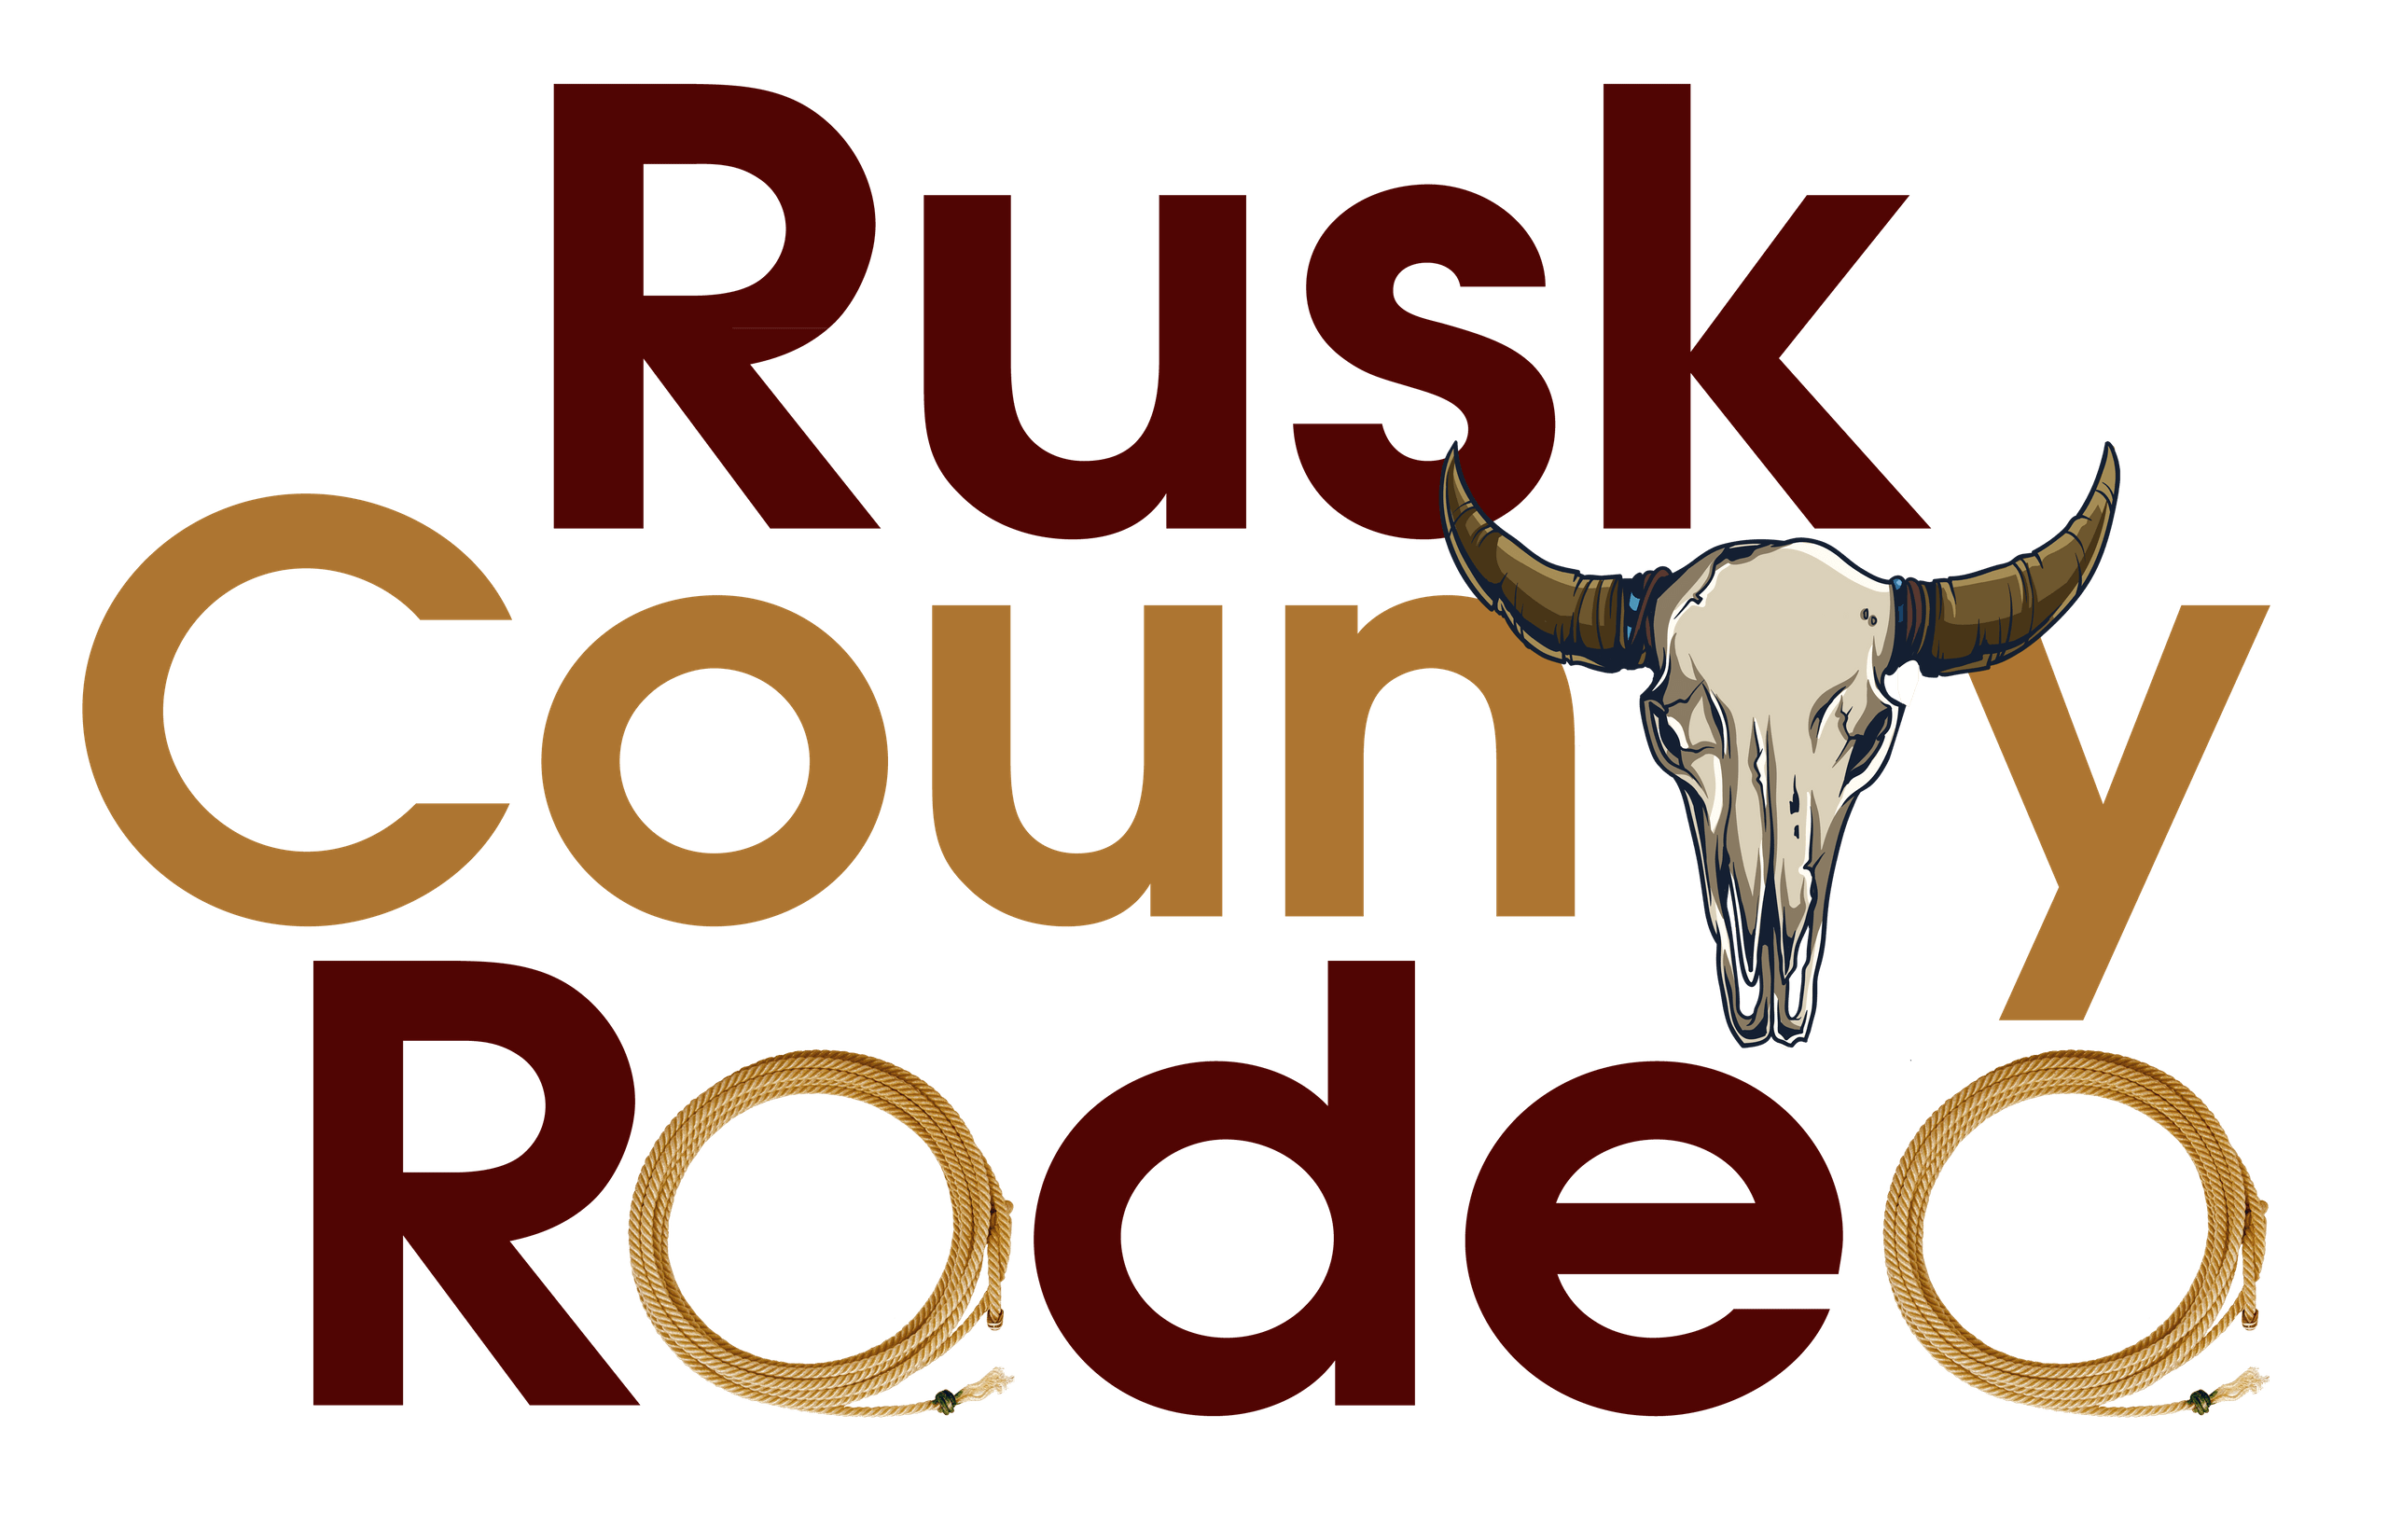 Rusk Logo - RUSK COUNTY RODEO | RUSK COUNTY RODEO